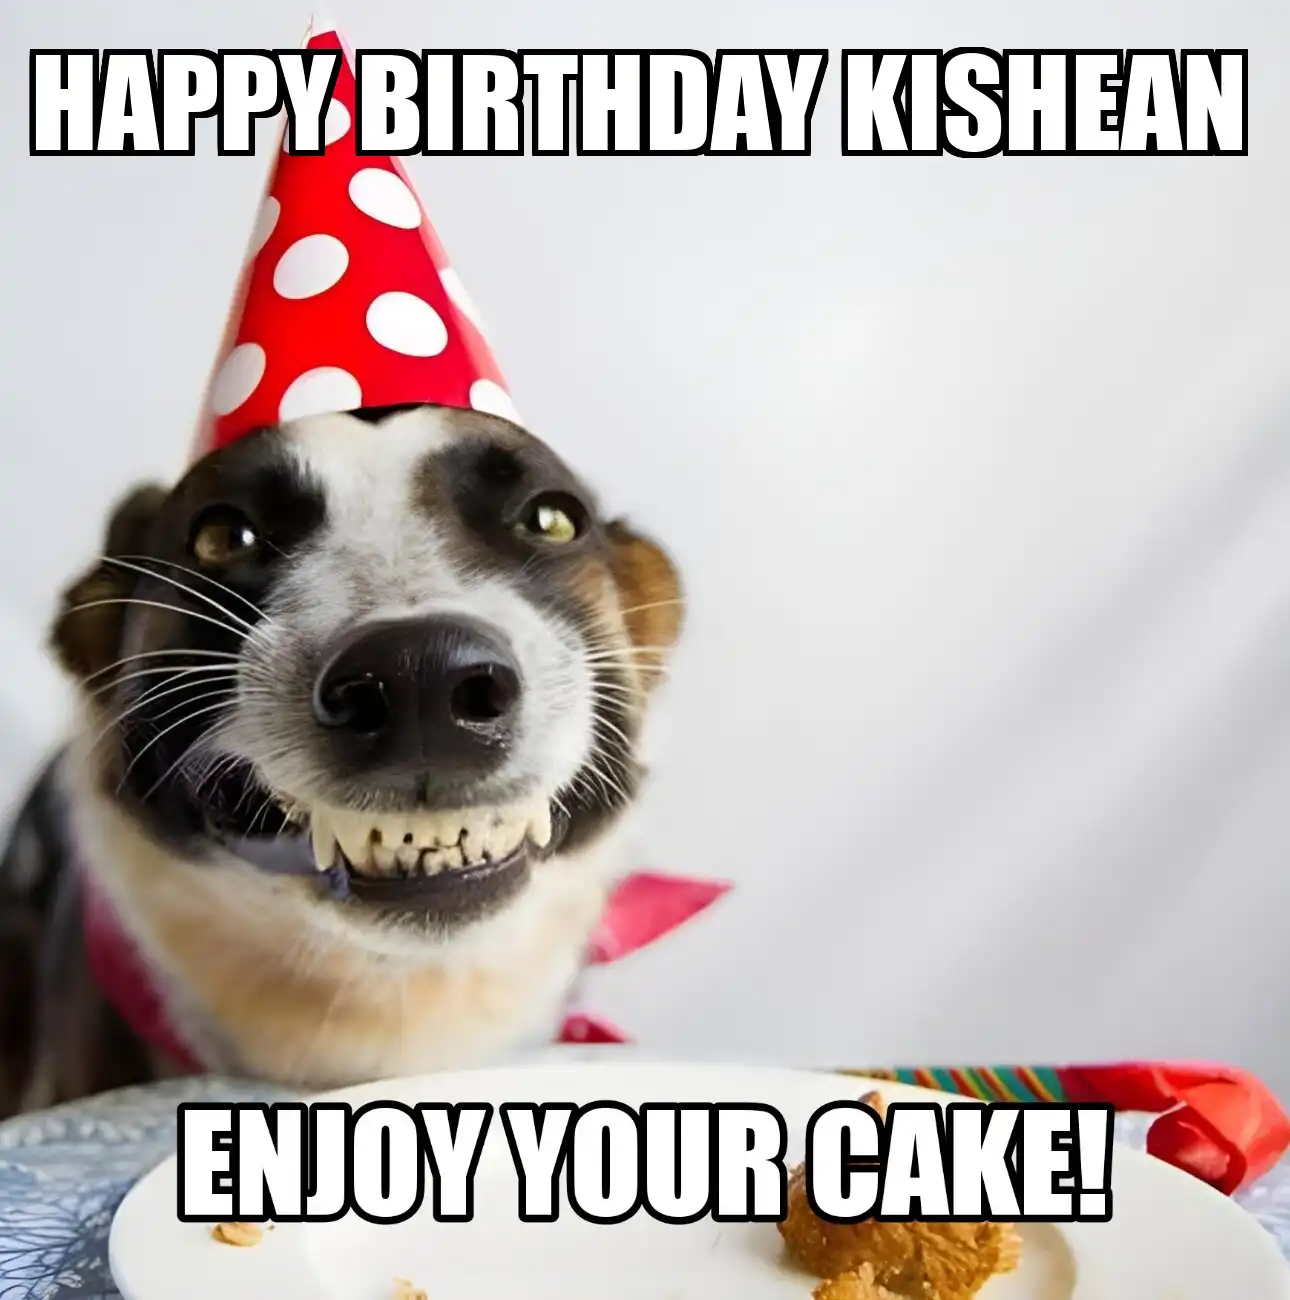 Happy Birthday Kishean Enjoy Your Cake Dog Meme